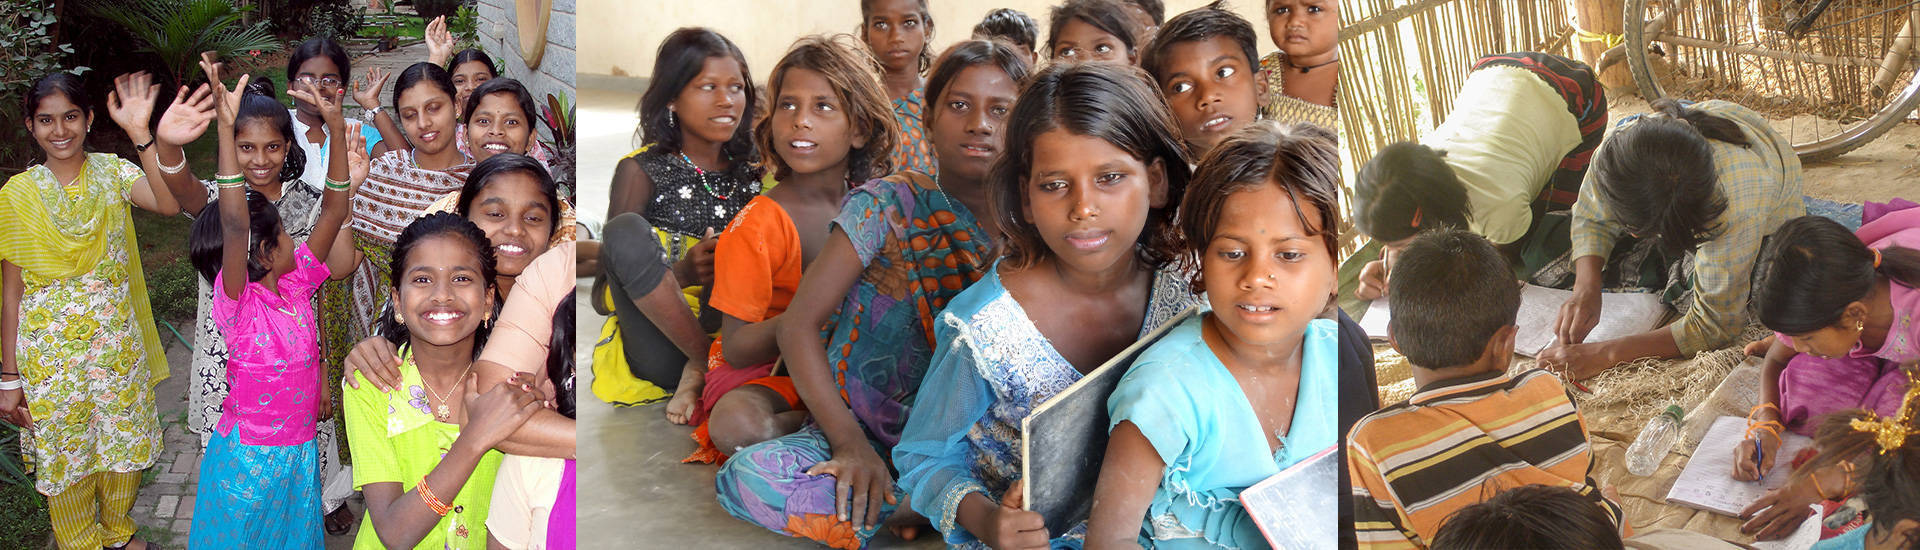 Aishwarya, la menor india que recuperó su infancia y su futuro gracias a la educación de Don Bosco